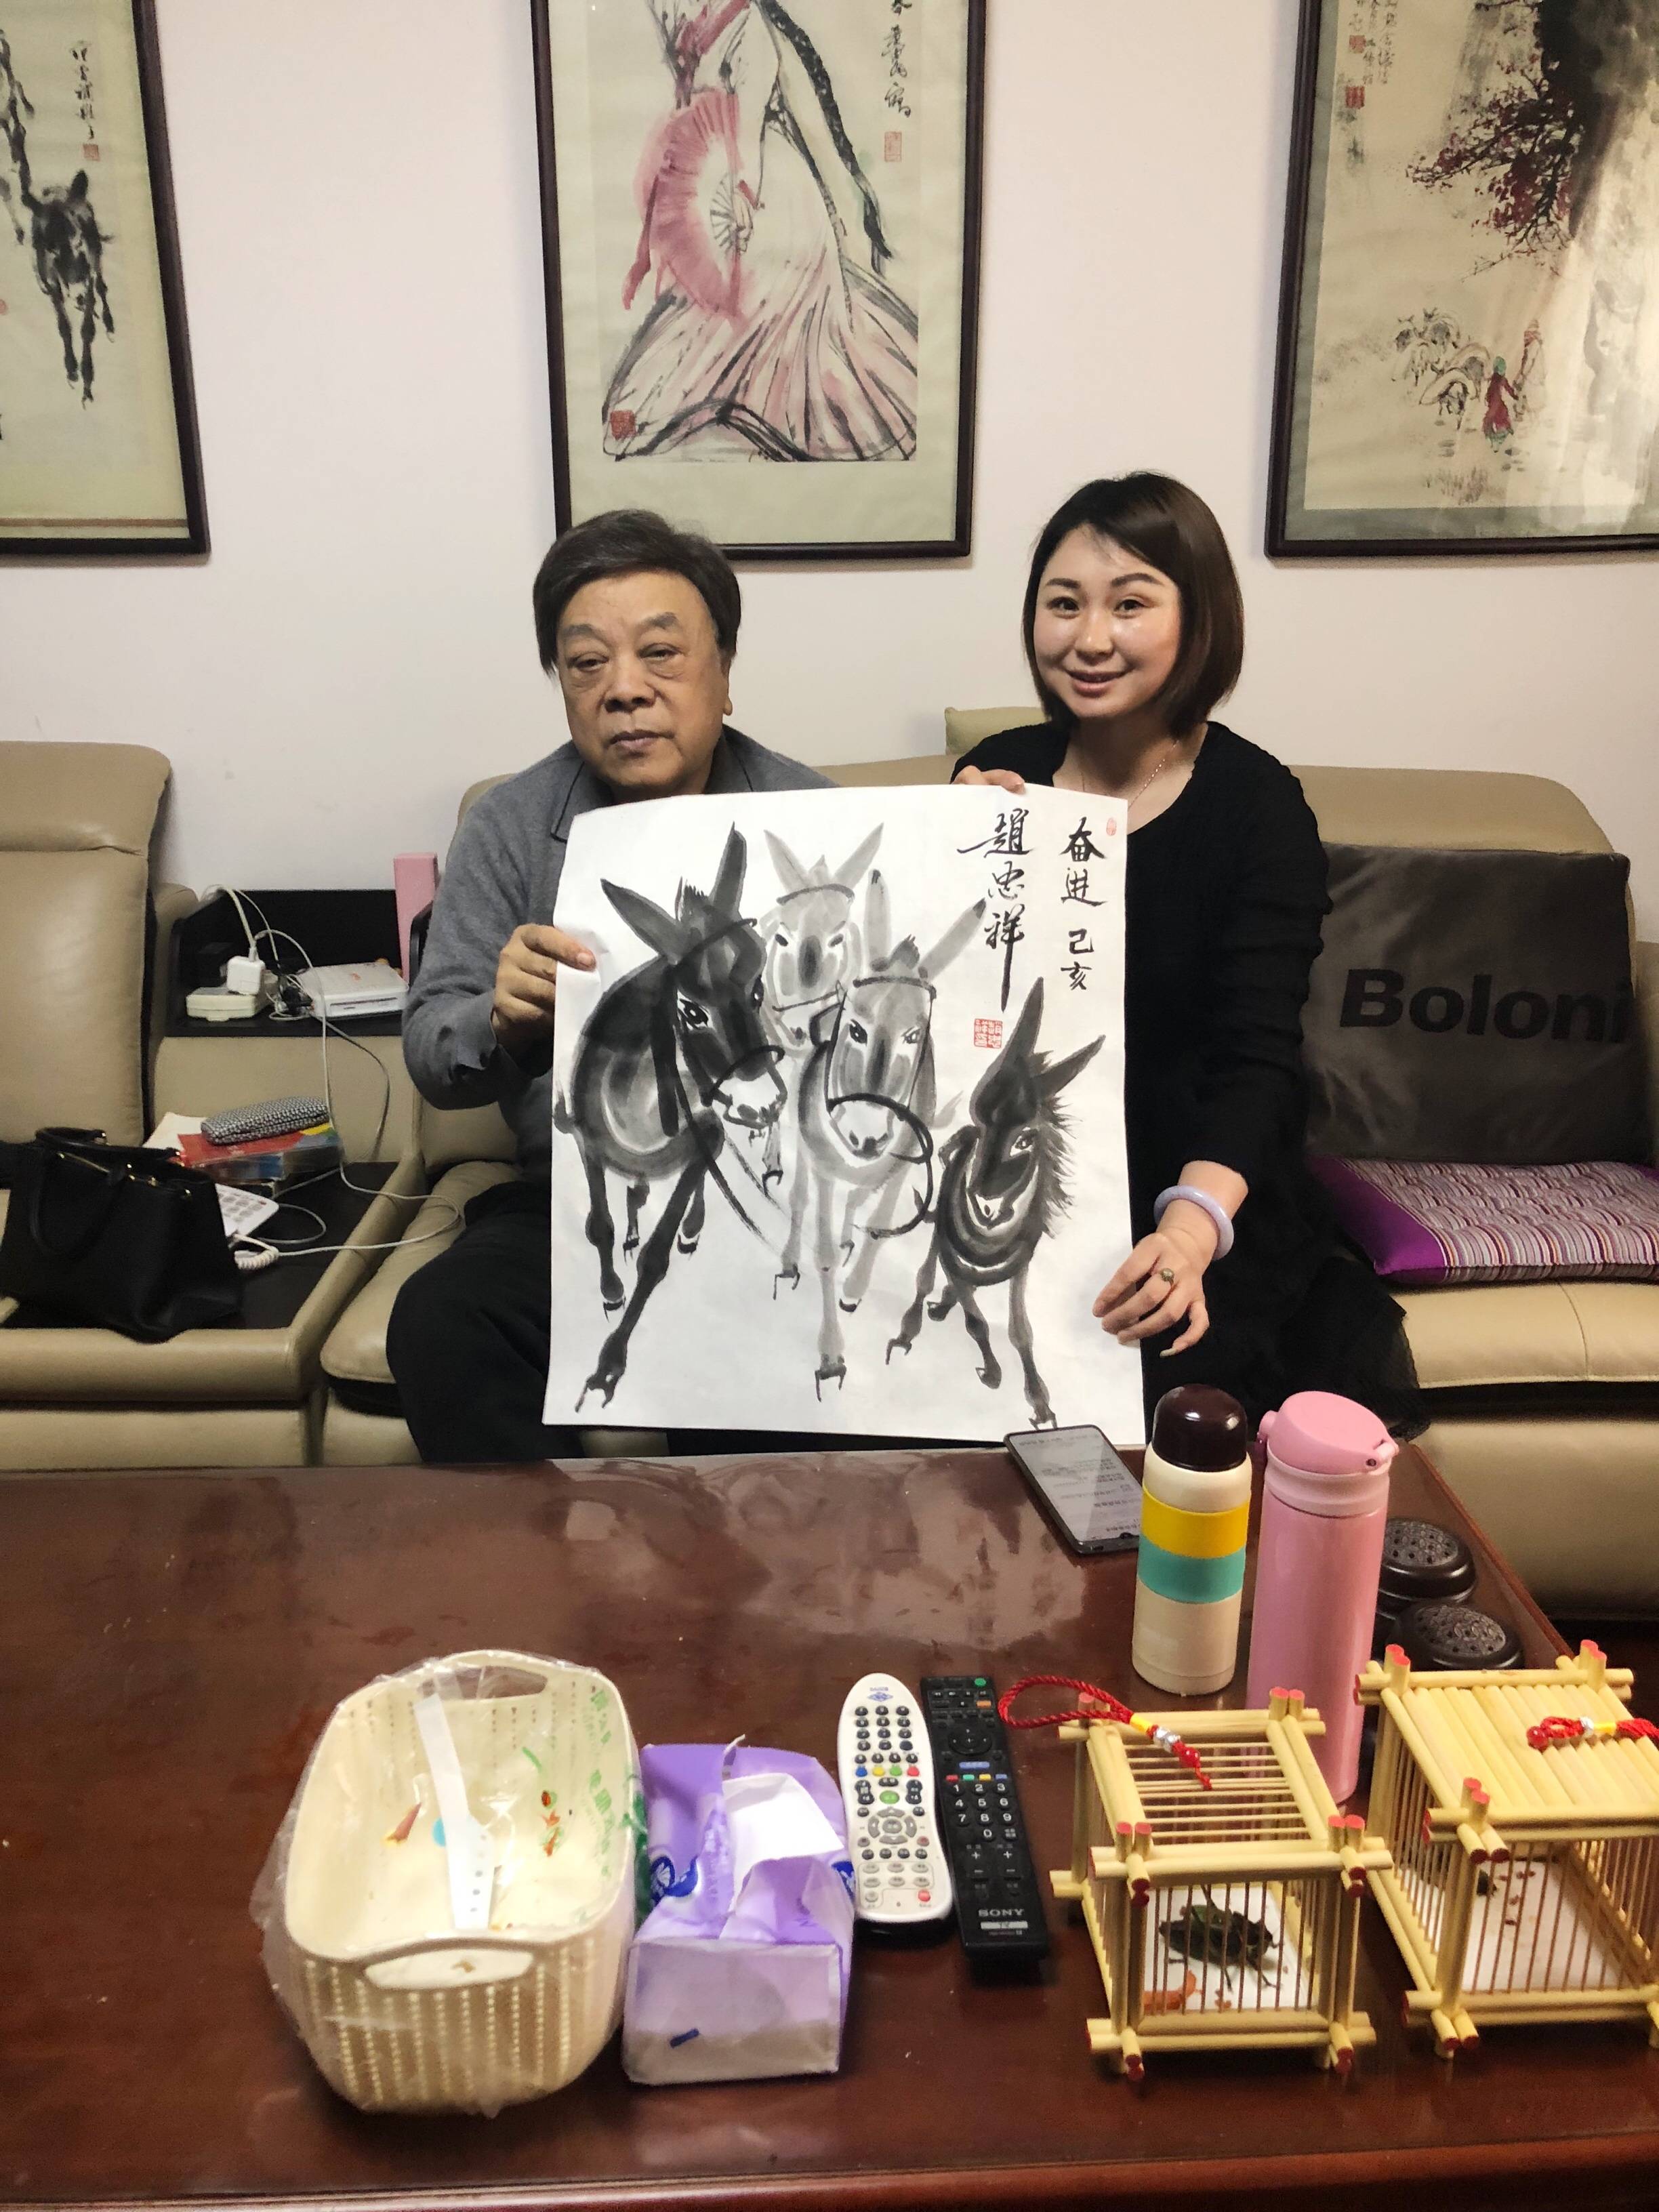 小编就是图片与赵忠祥老师合影的一名书画经纪人,作为一名专业的书画